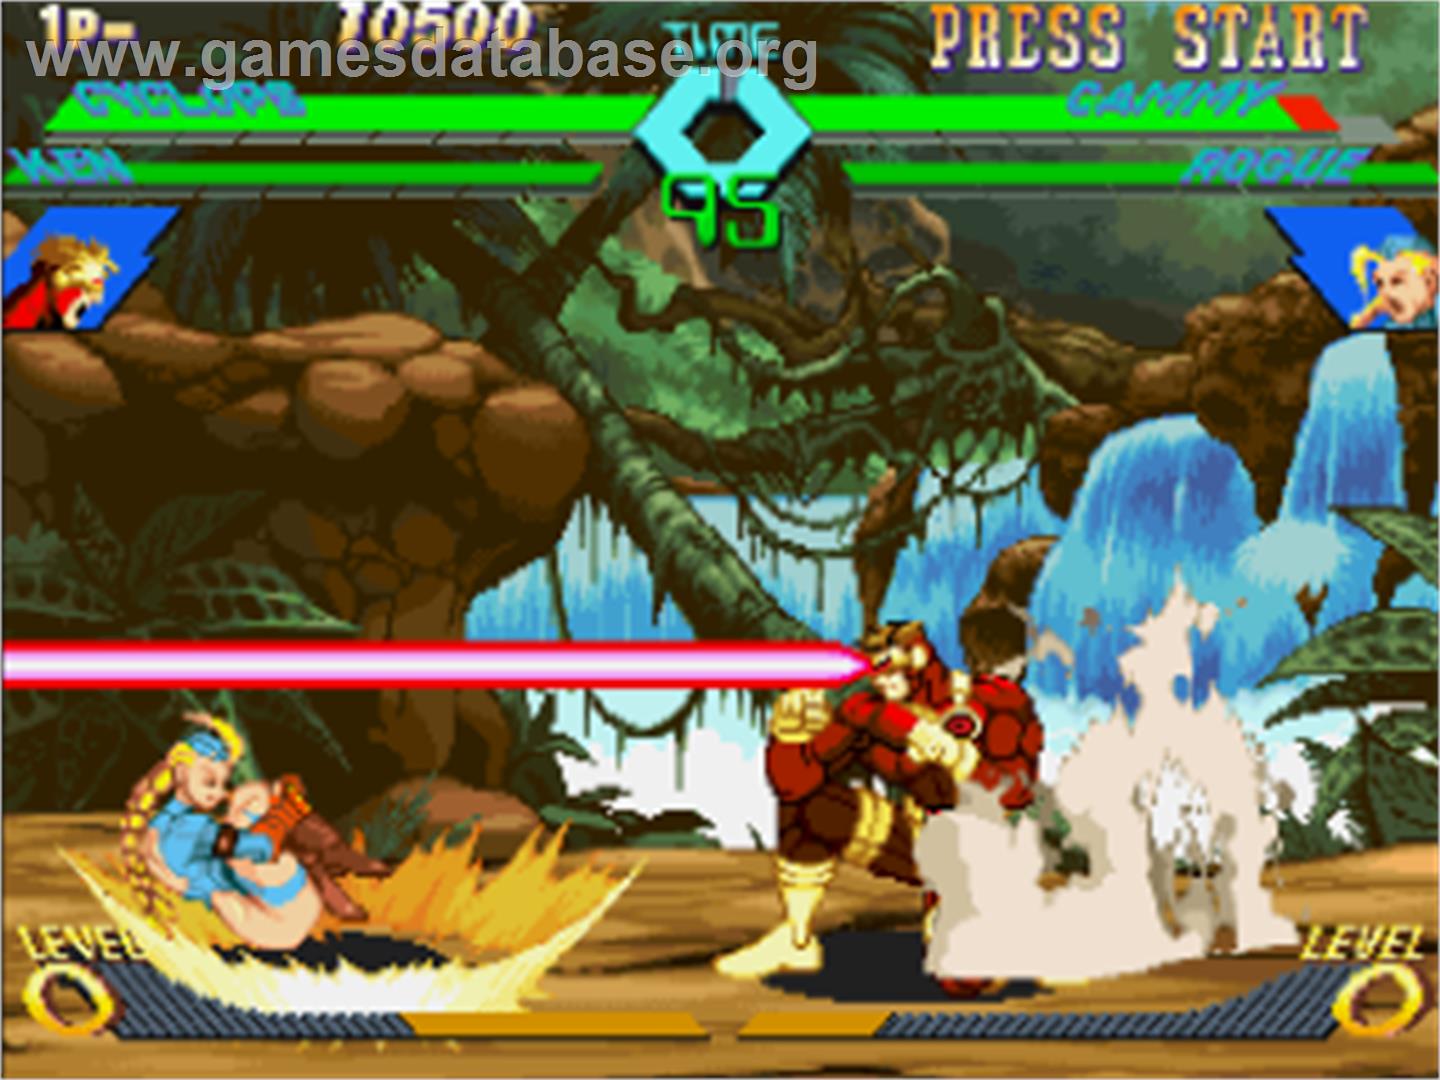 X-Men Vs. Street Fighter - Sega Saturn - Artwork - In Game